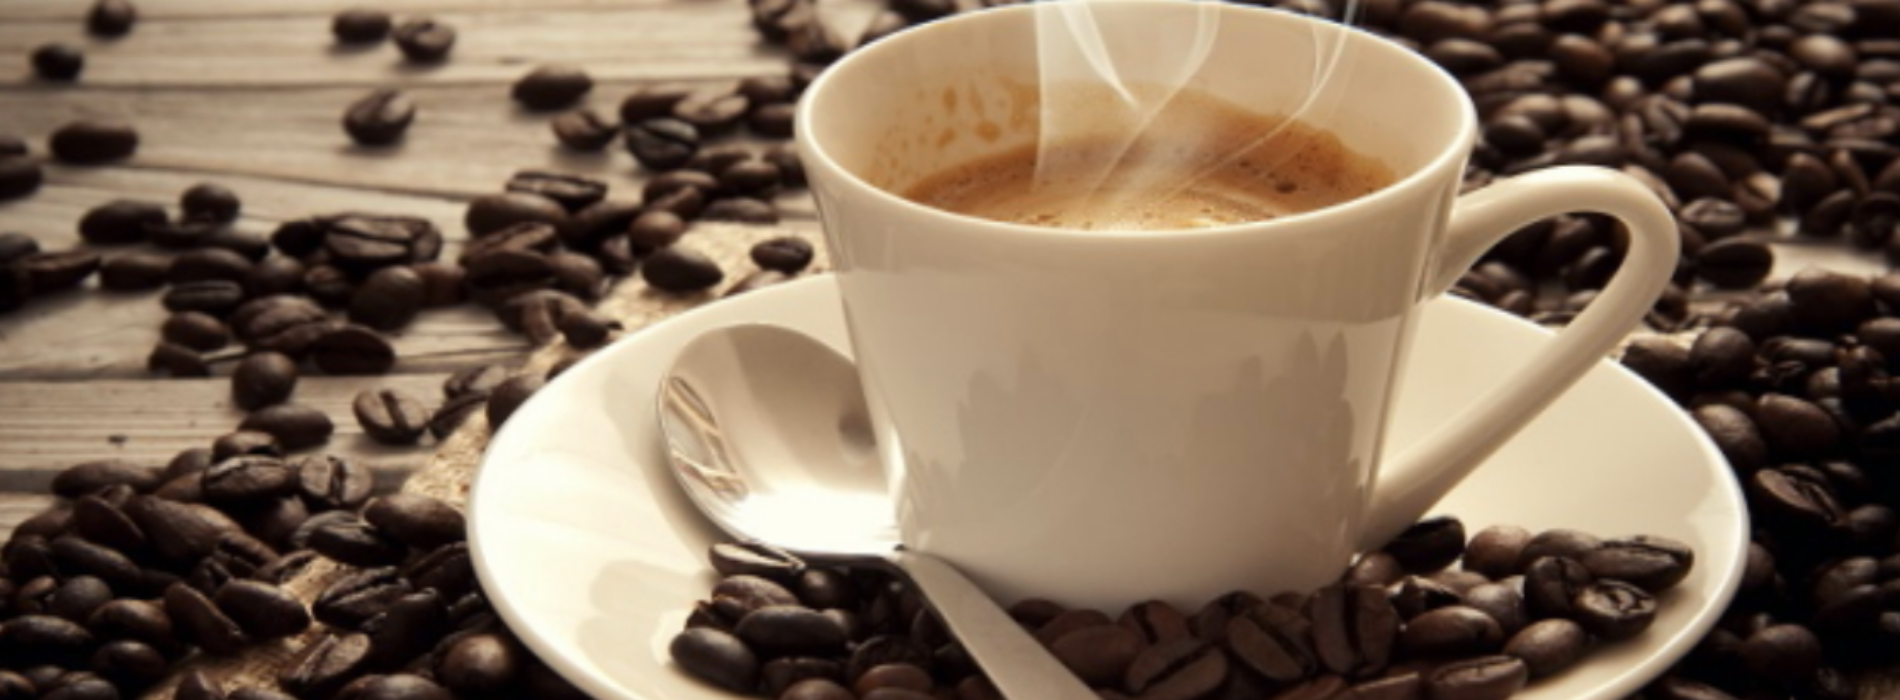 Cultura del caffè espresso napoletano, patrimonio Unesco, al via la procedura